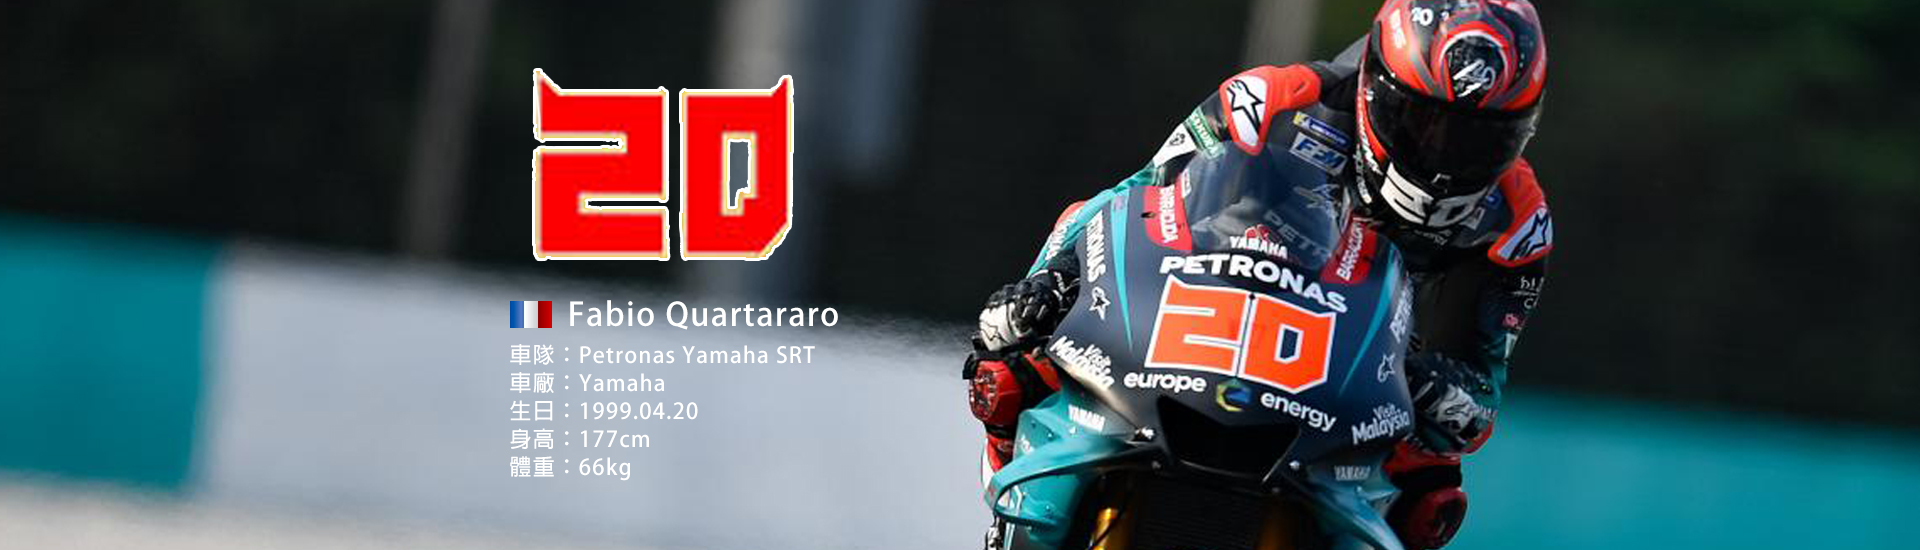 2019 MotoGP 【20】Fabio Quartararo